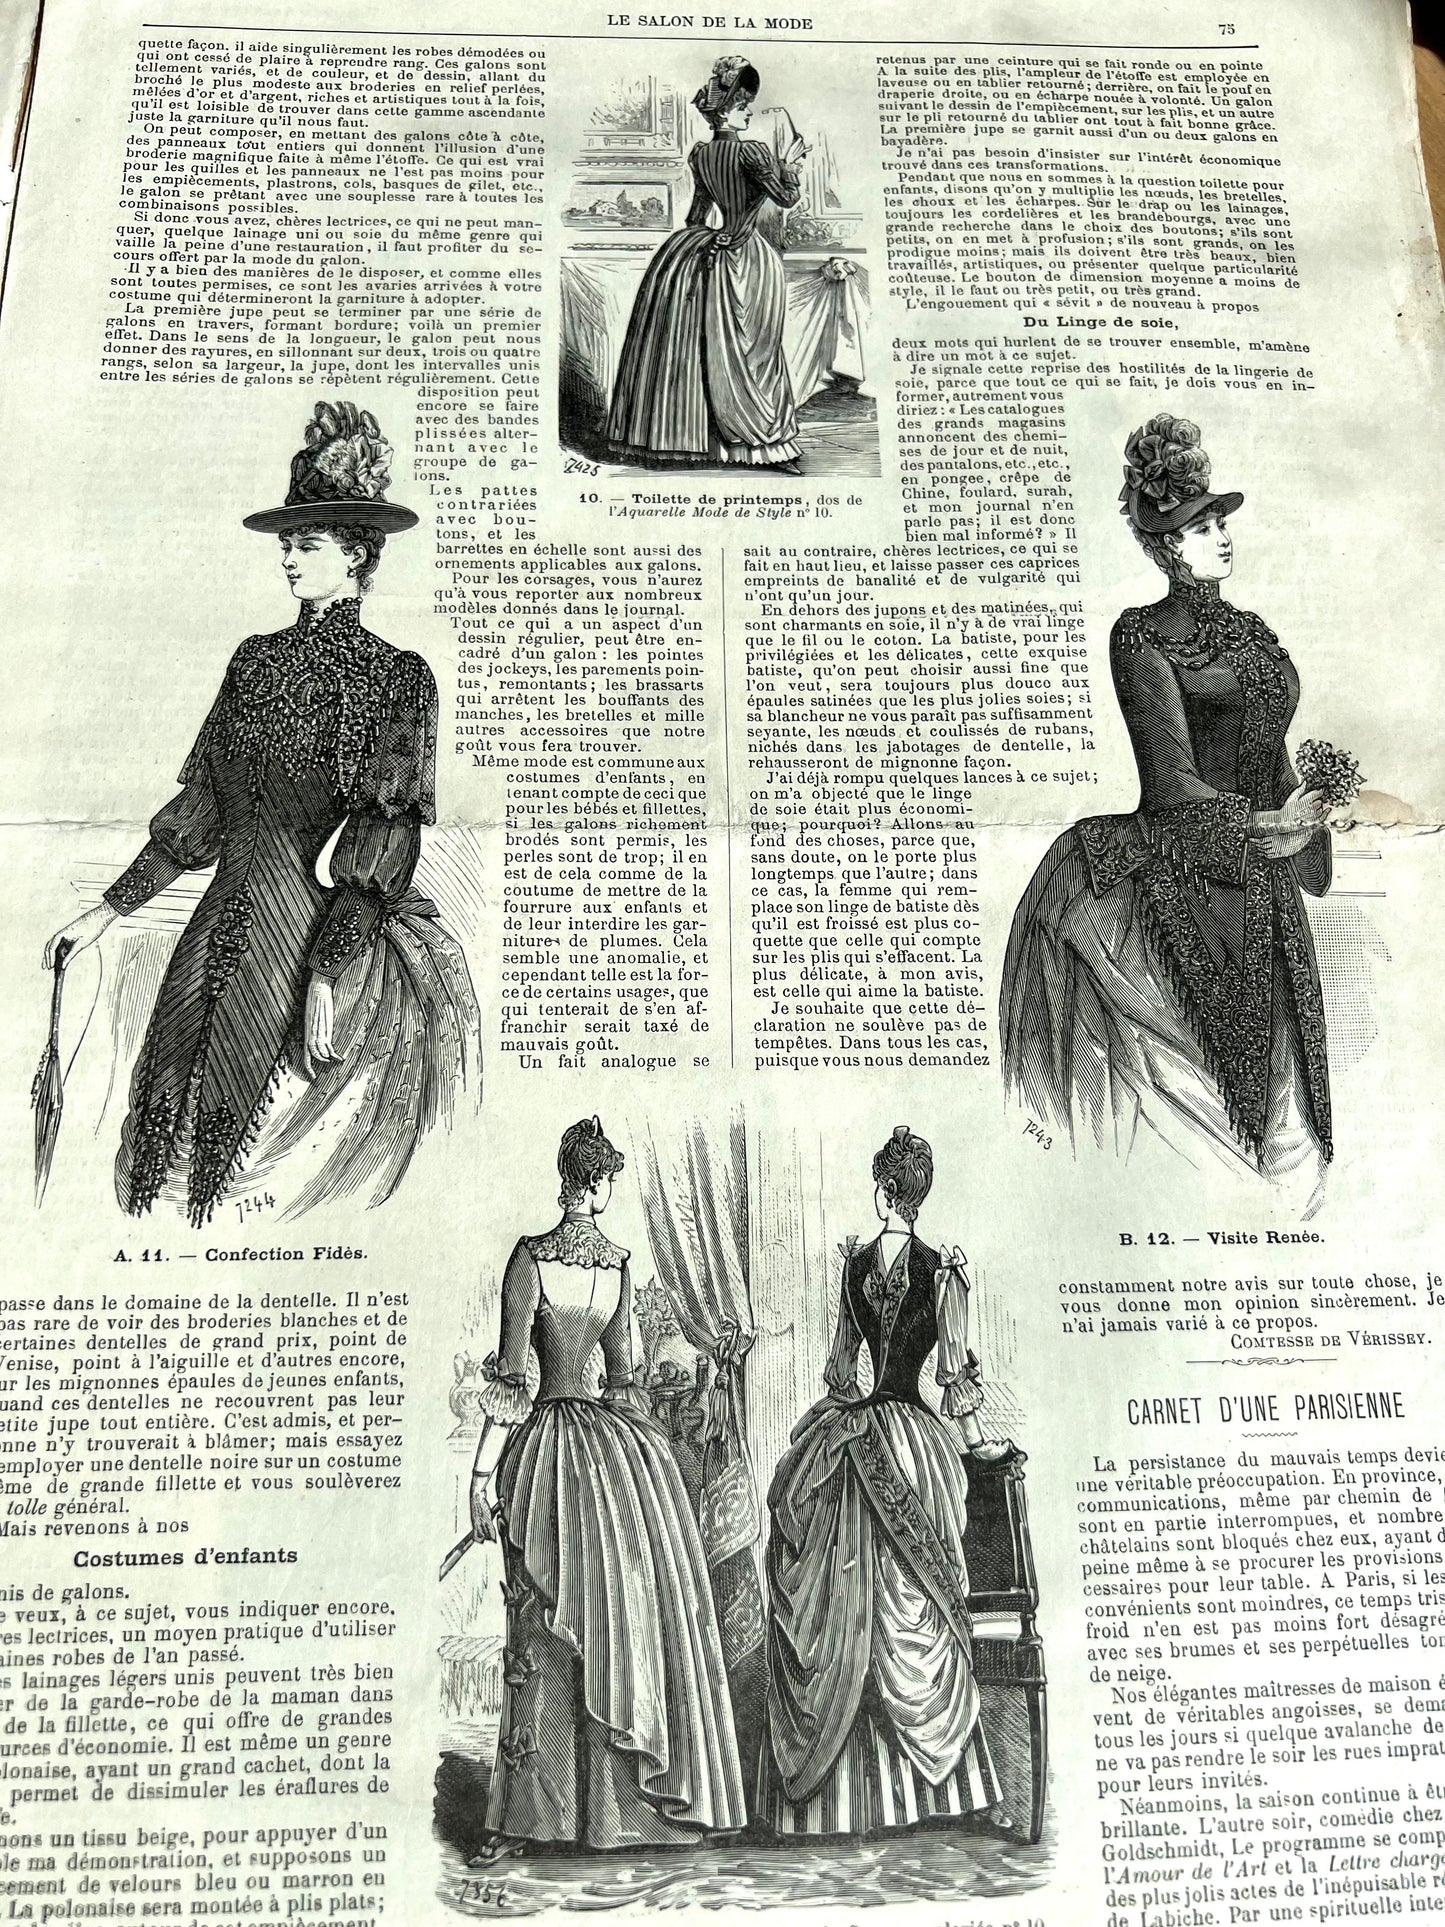 Crochet and Fashion in March 1888 French Fashion Paper Salon De La Mode